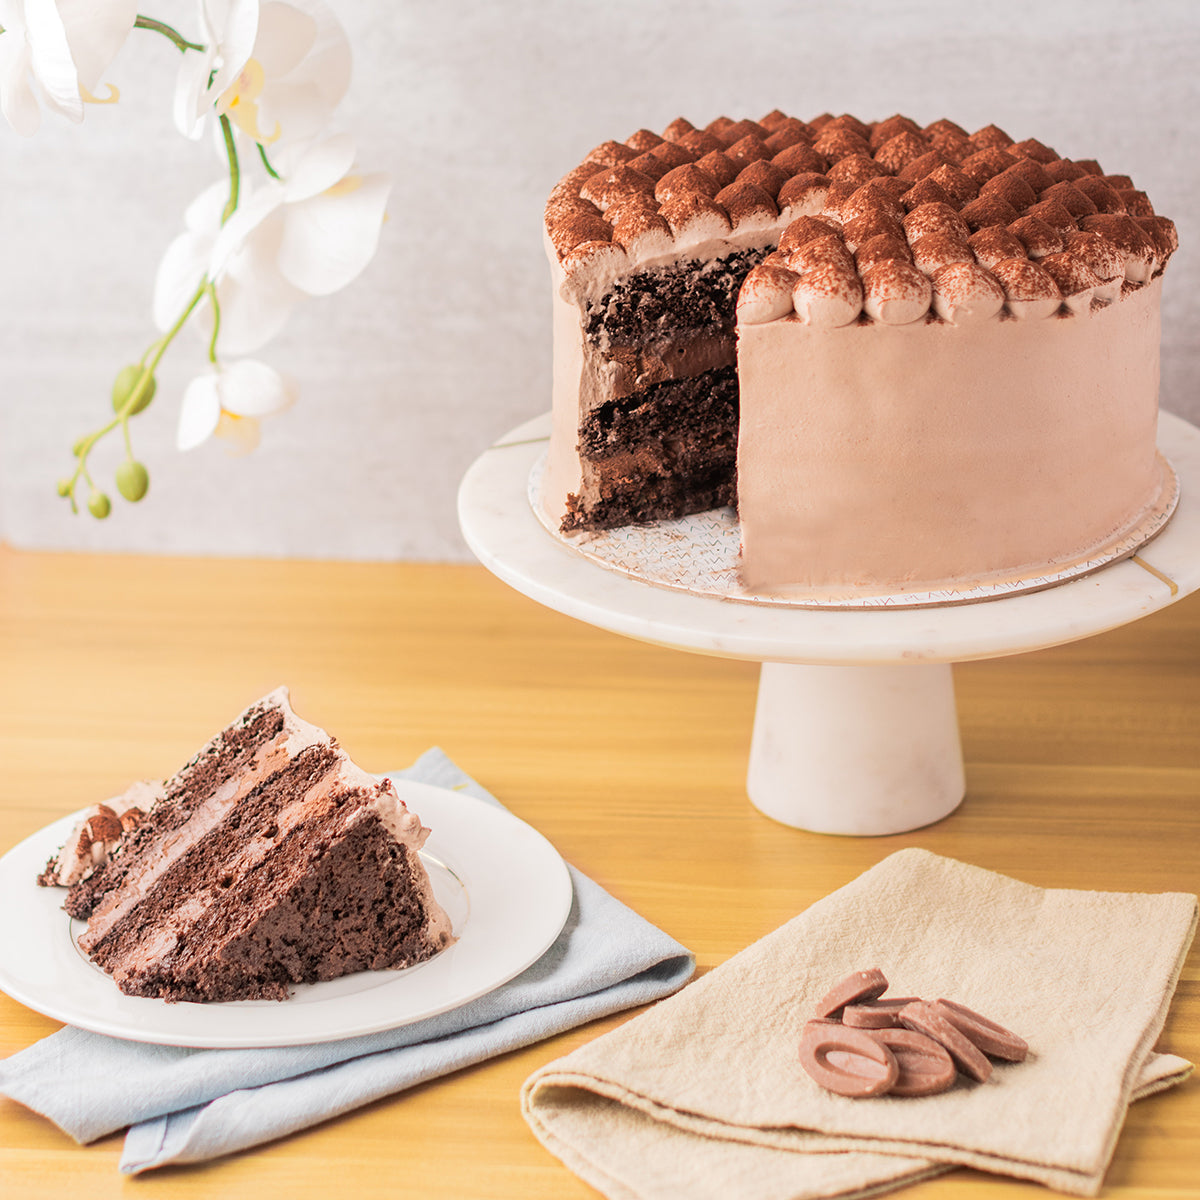 Chocolate & Vanilla Custard Cakes - The Tasty K